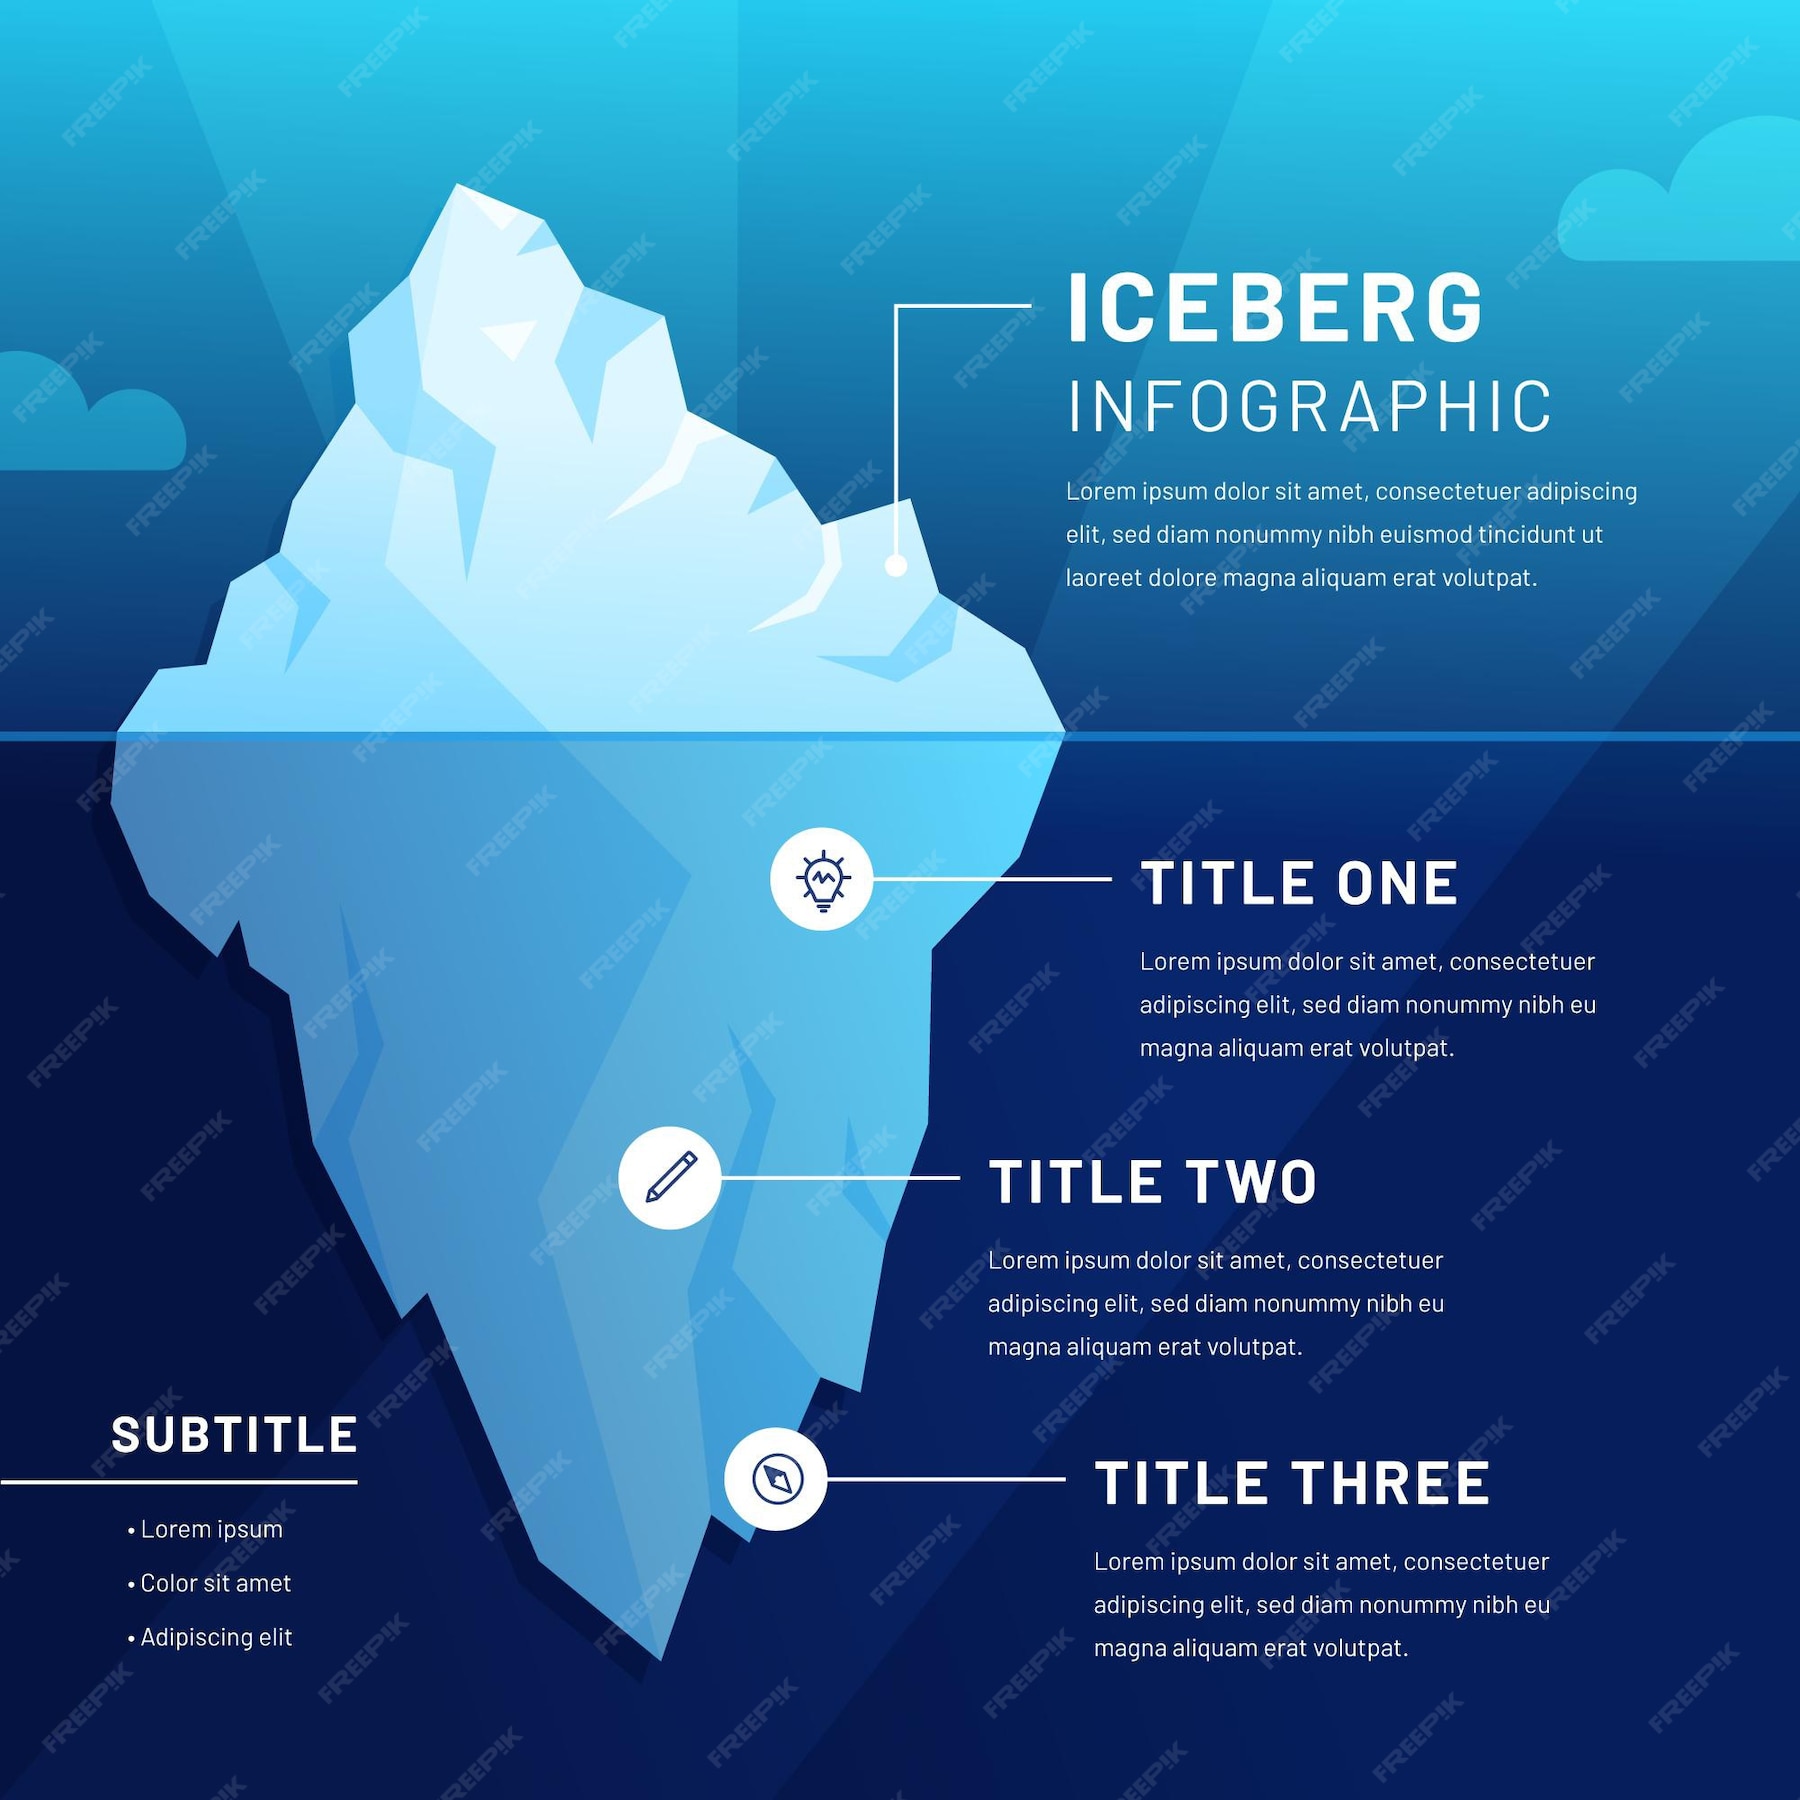 Free Vector | Iceberg infographic